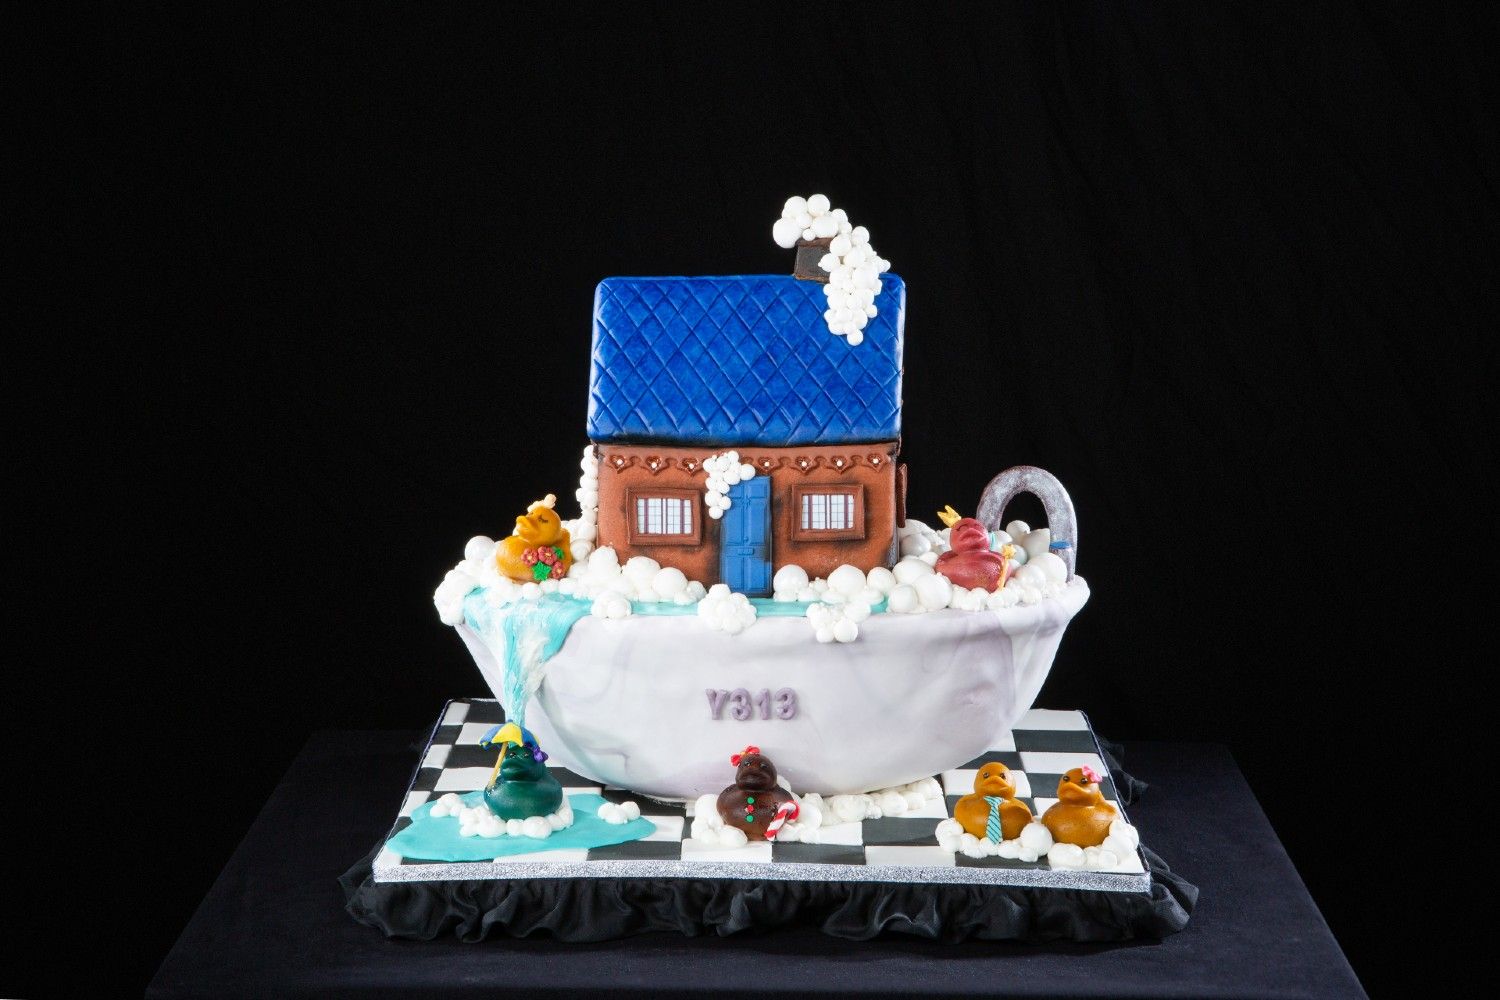 LV birthday cake ( Custom cake ), Food & Drinks, Homemade Bakes on Carousell